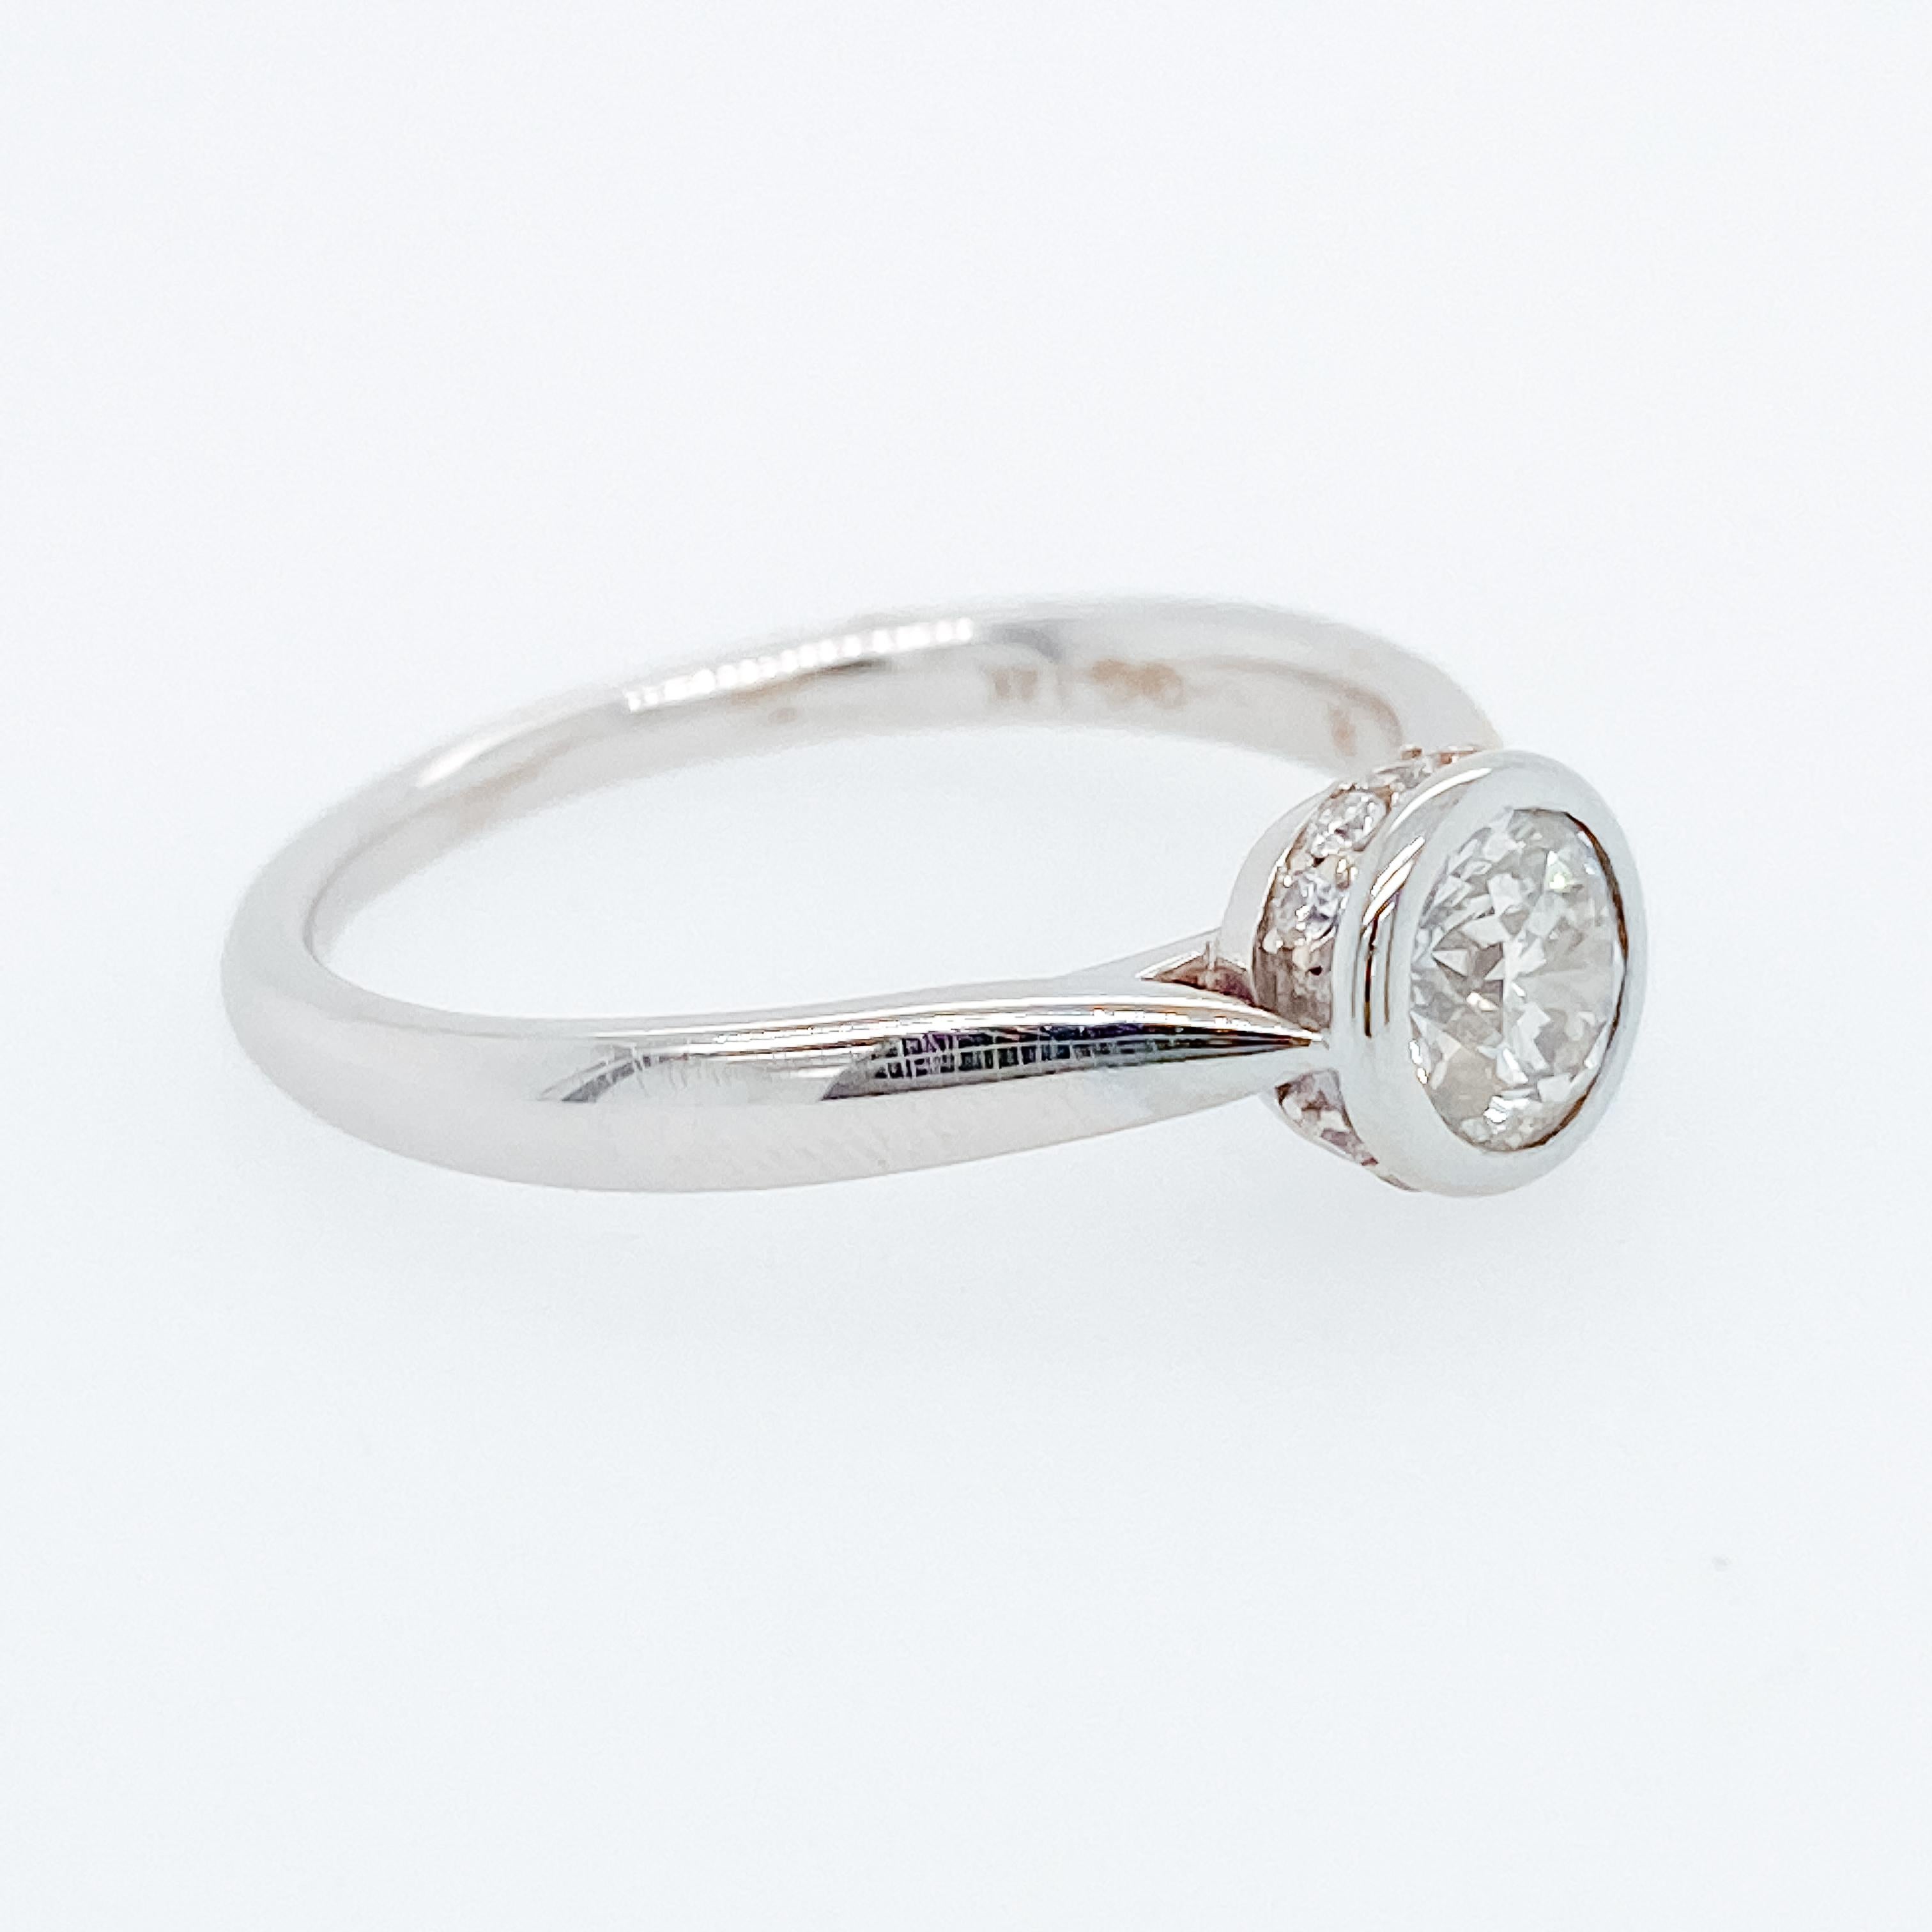 Cette magnifique bague de fiançailles en diamant est composée d'un diamant rond de taille brillante serti dans un magnifique chaton avec un halo de diamants caché en dessous. Tout dans cette bague est élégant et notre bijoutier qui l'a fabriquée